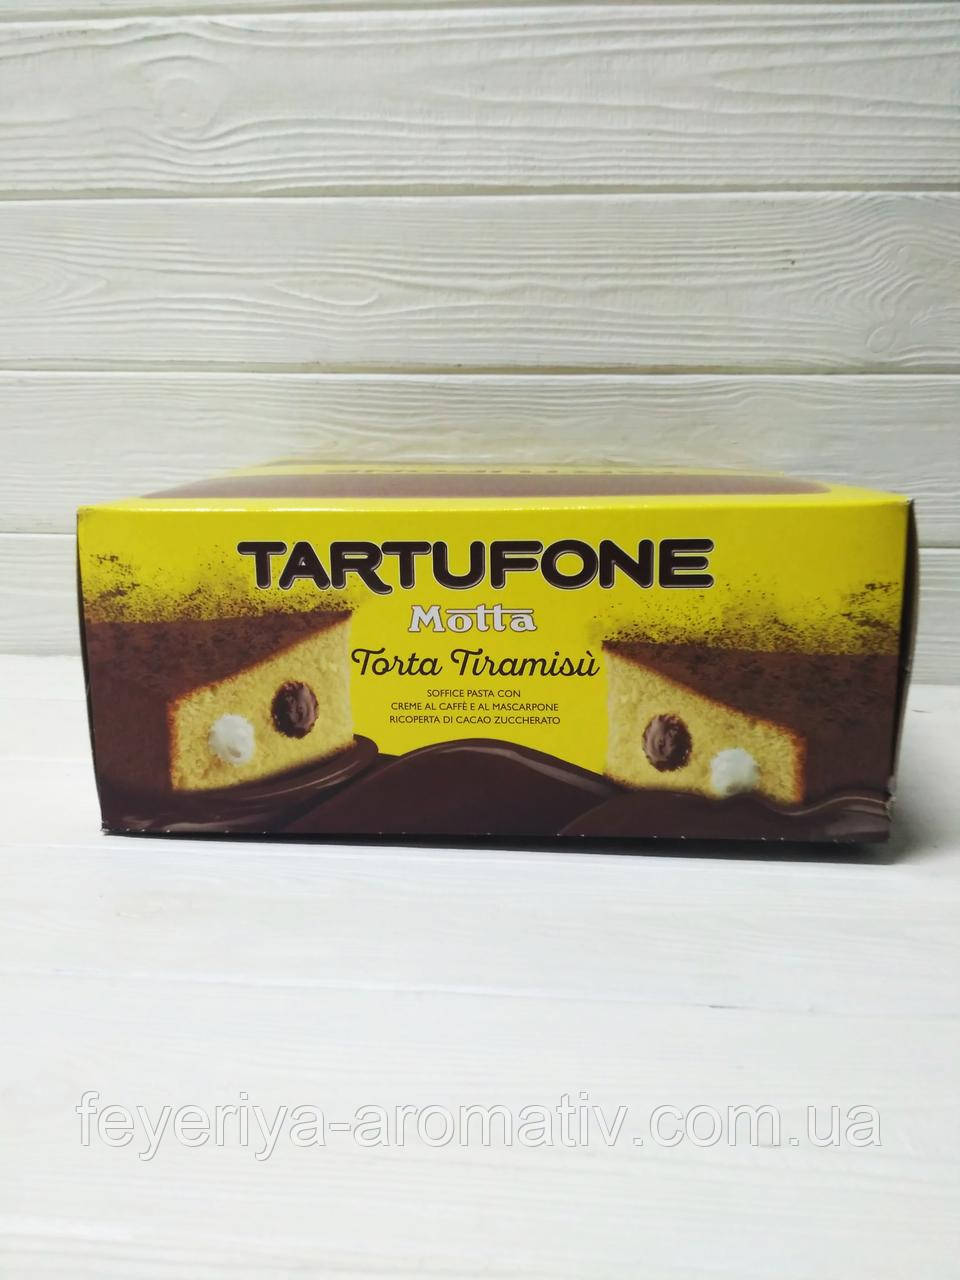 Панеттоне Tartufone Motta Torta Tiramisu 450г (Италия)